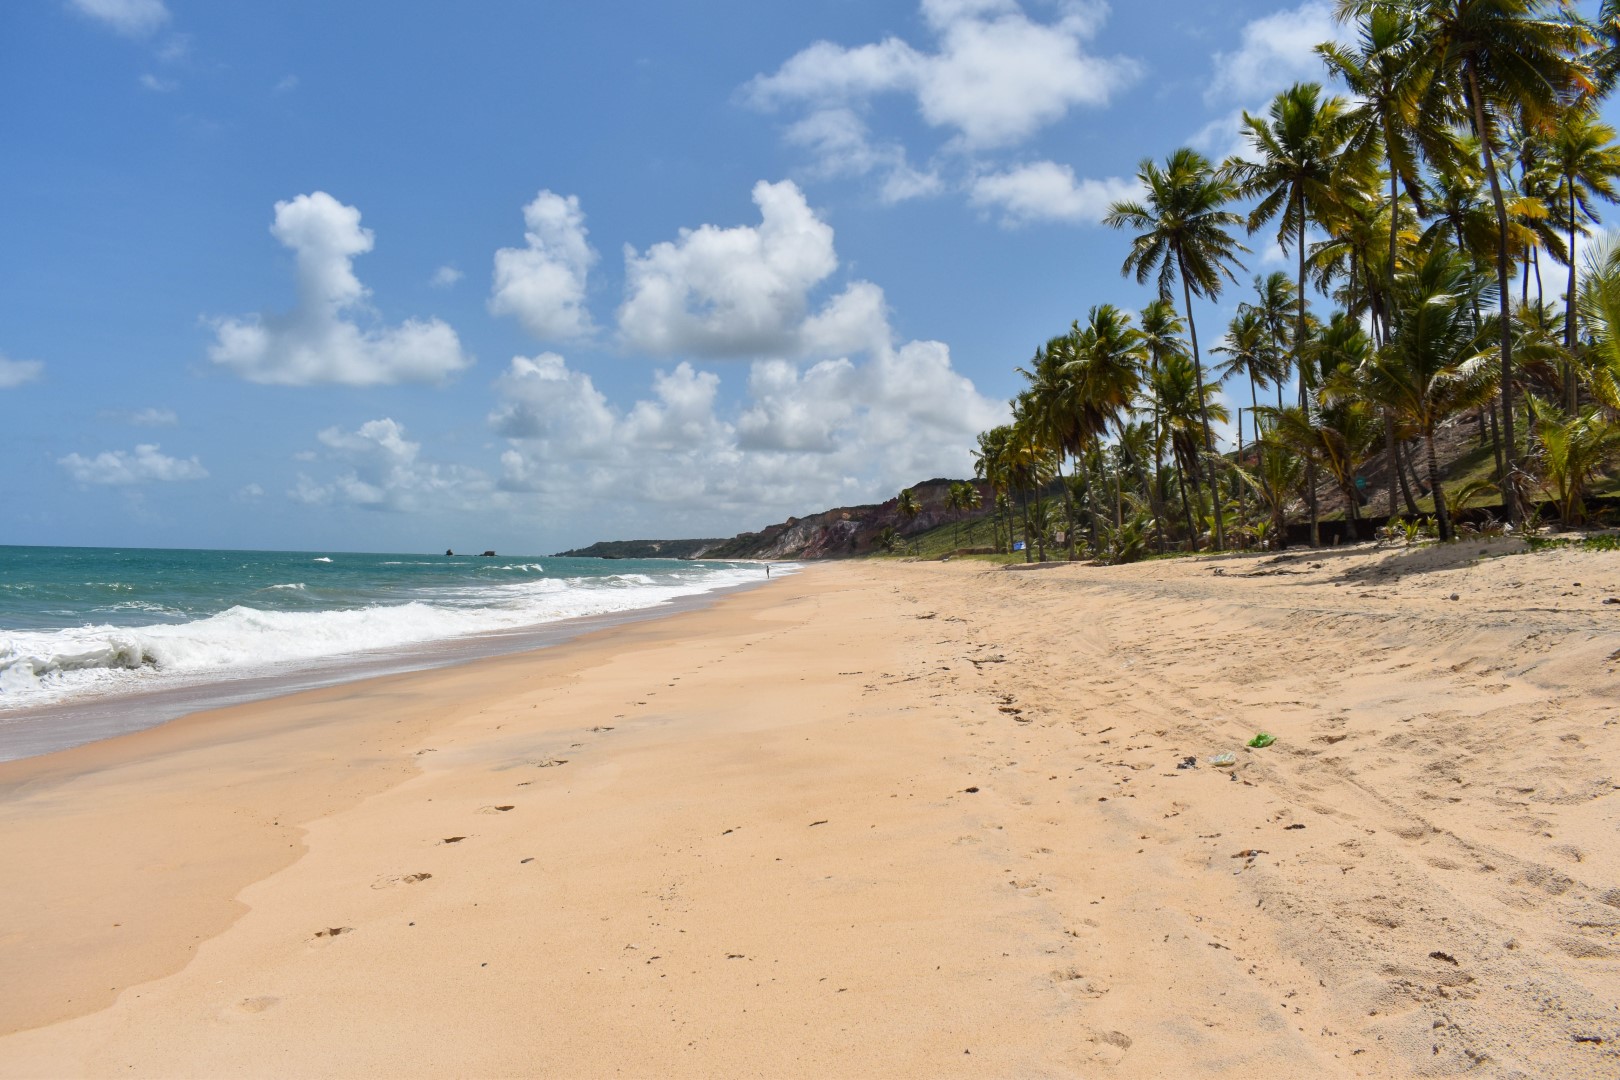 Praia de Coqueirinho, Conde - State of Paraíba